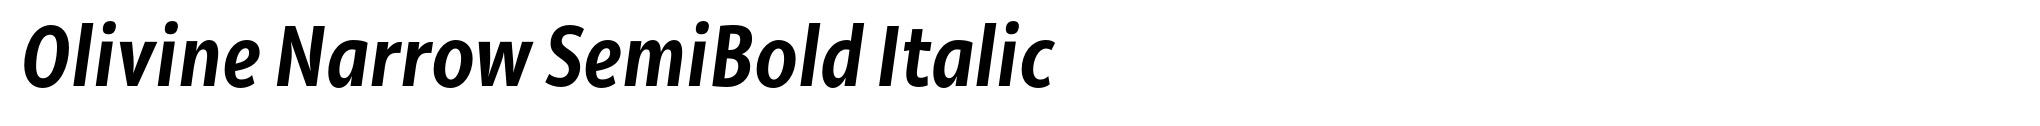 Olivine Narrow SemiBold Italic image